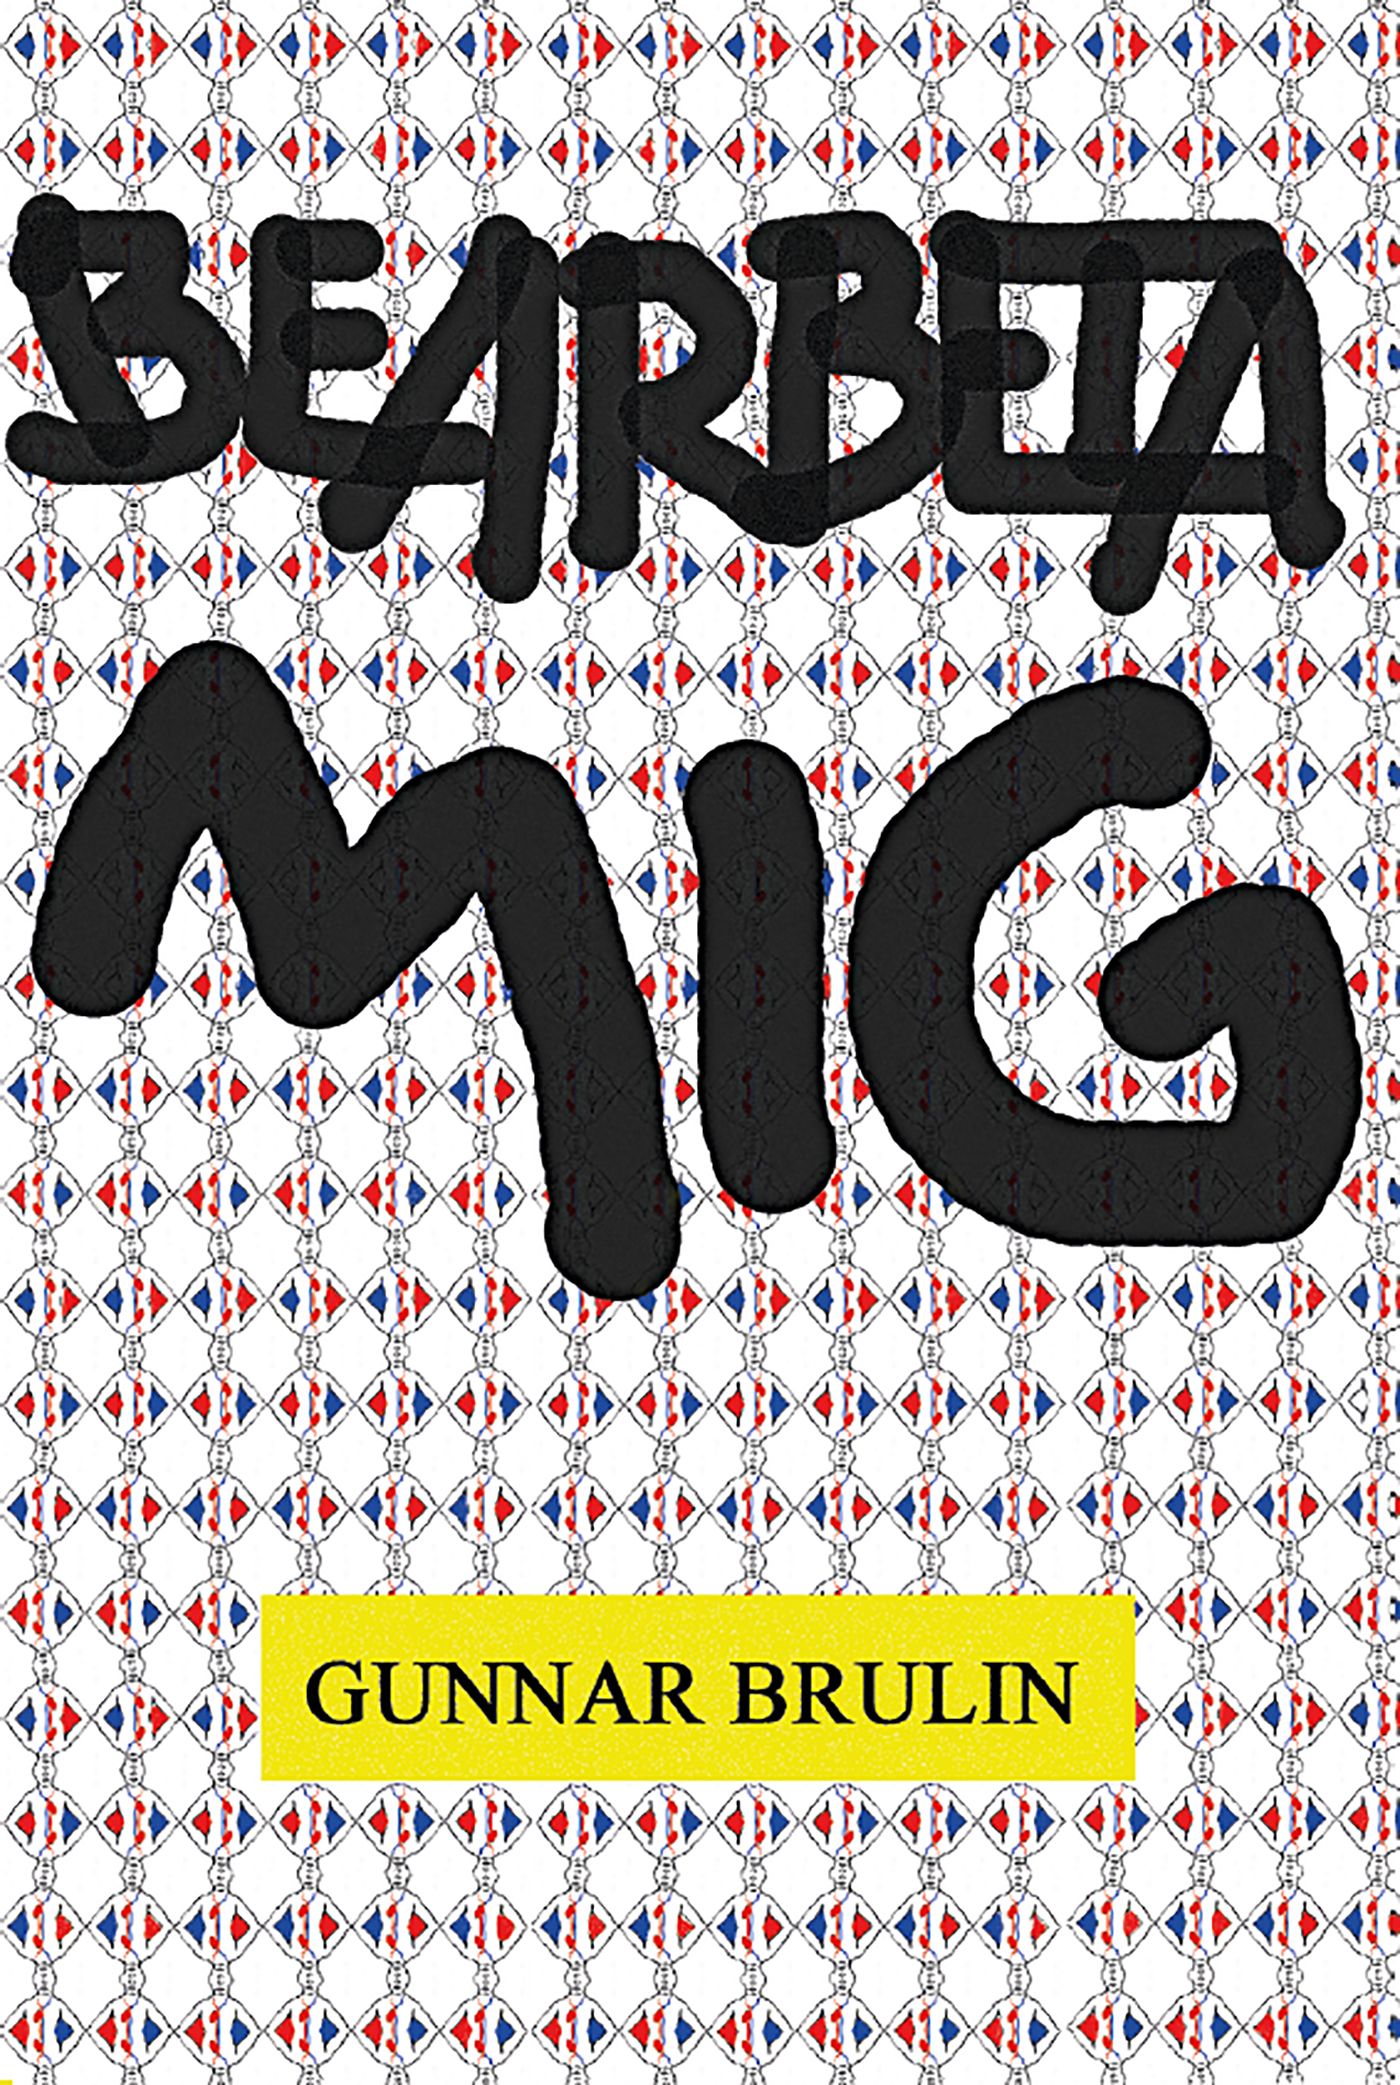 Bearbeta mig, e-bok av Gunnar Brulin